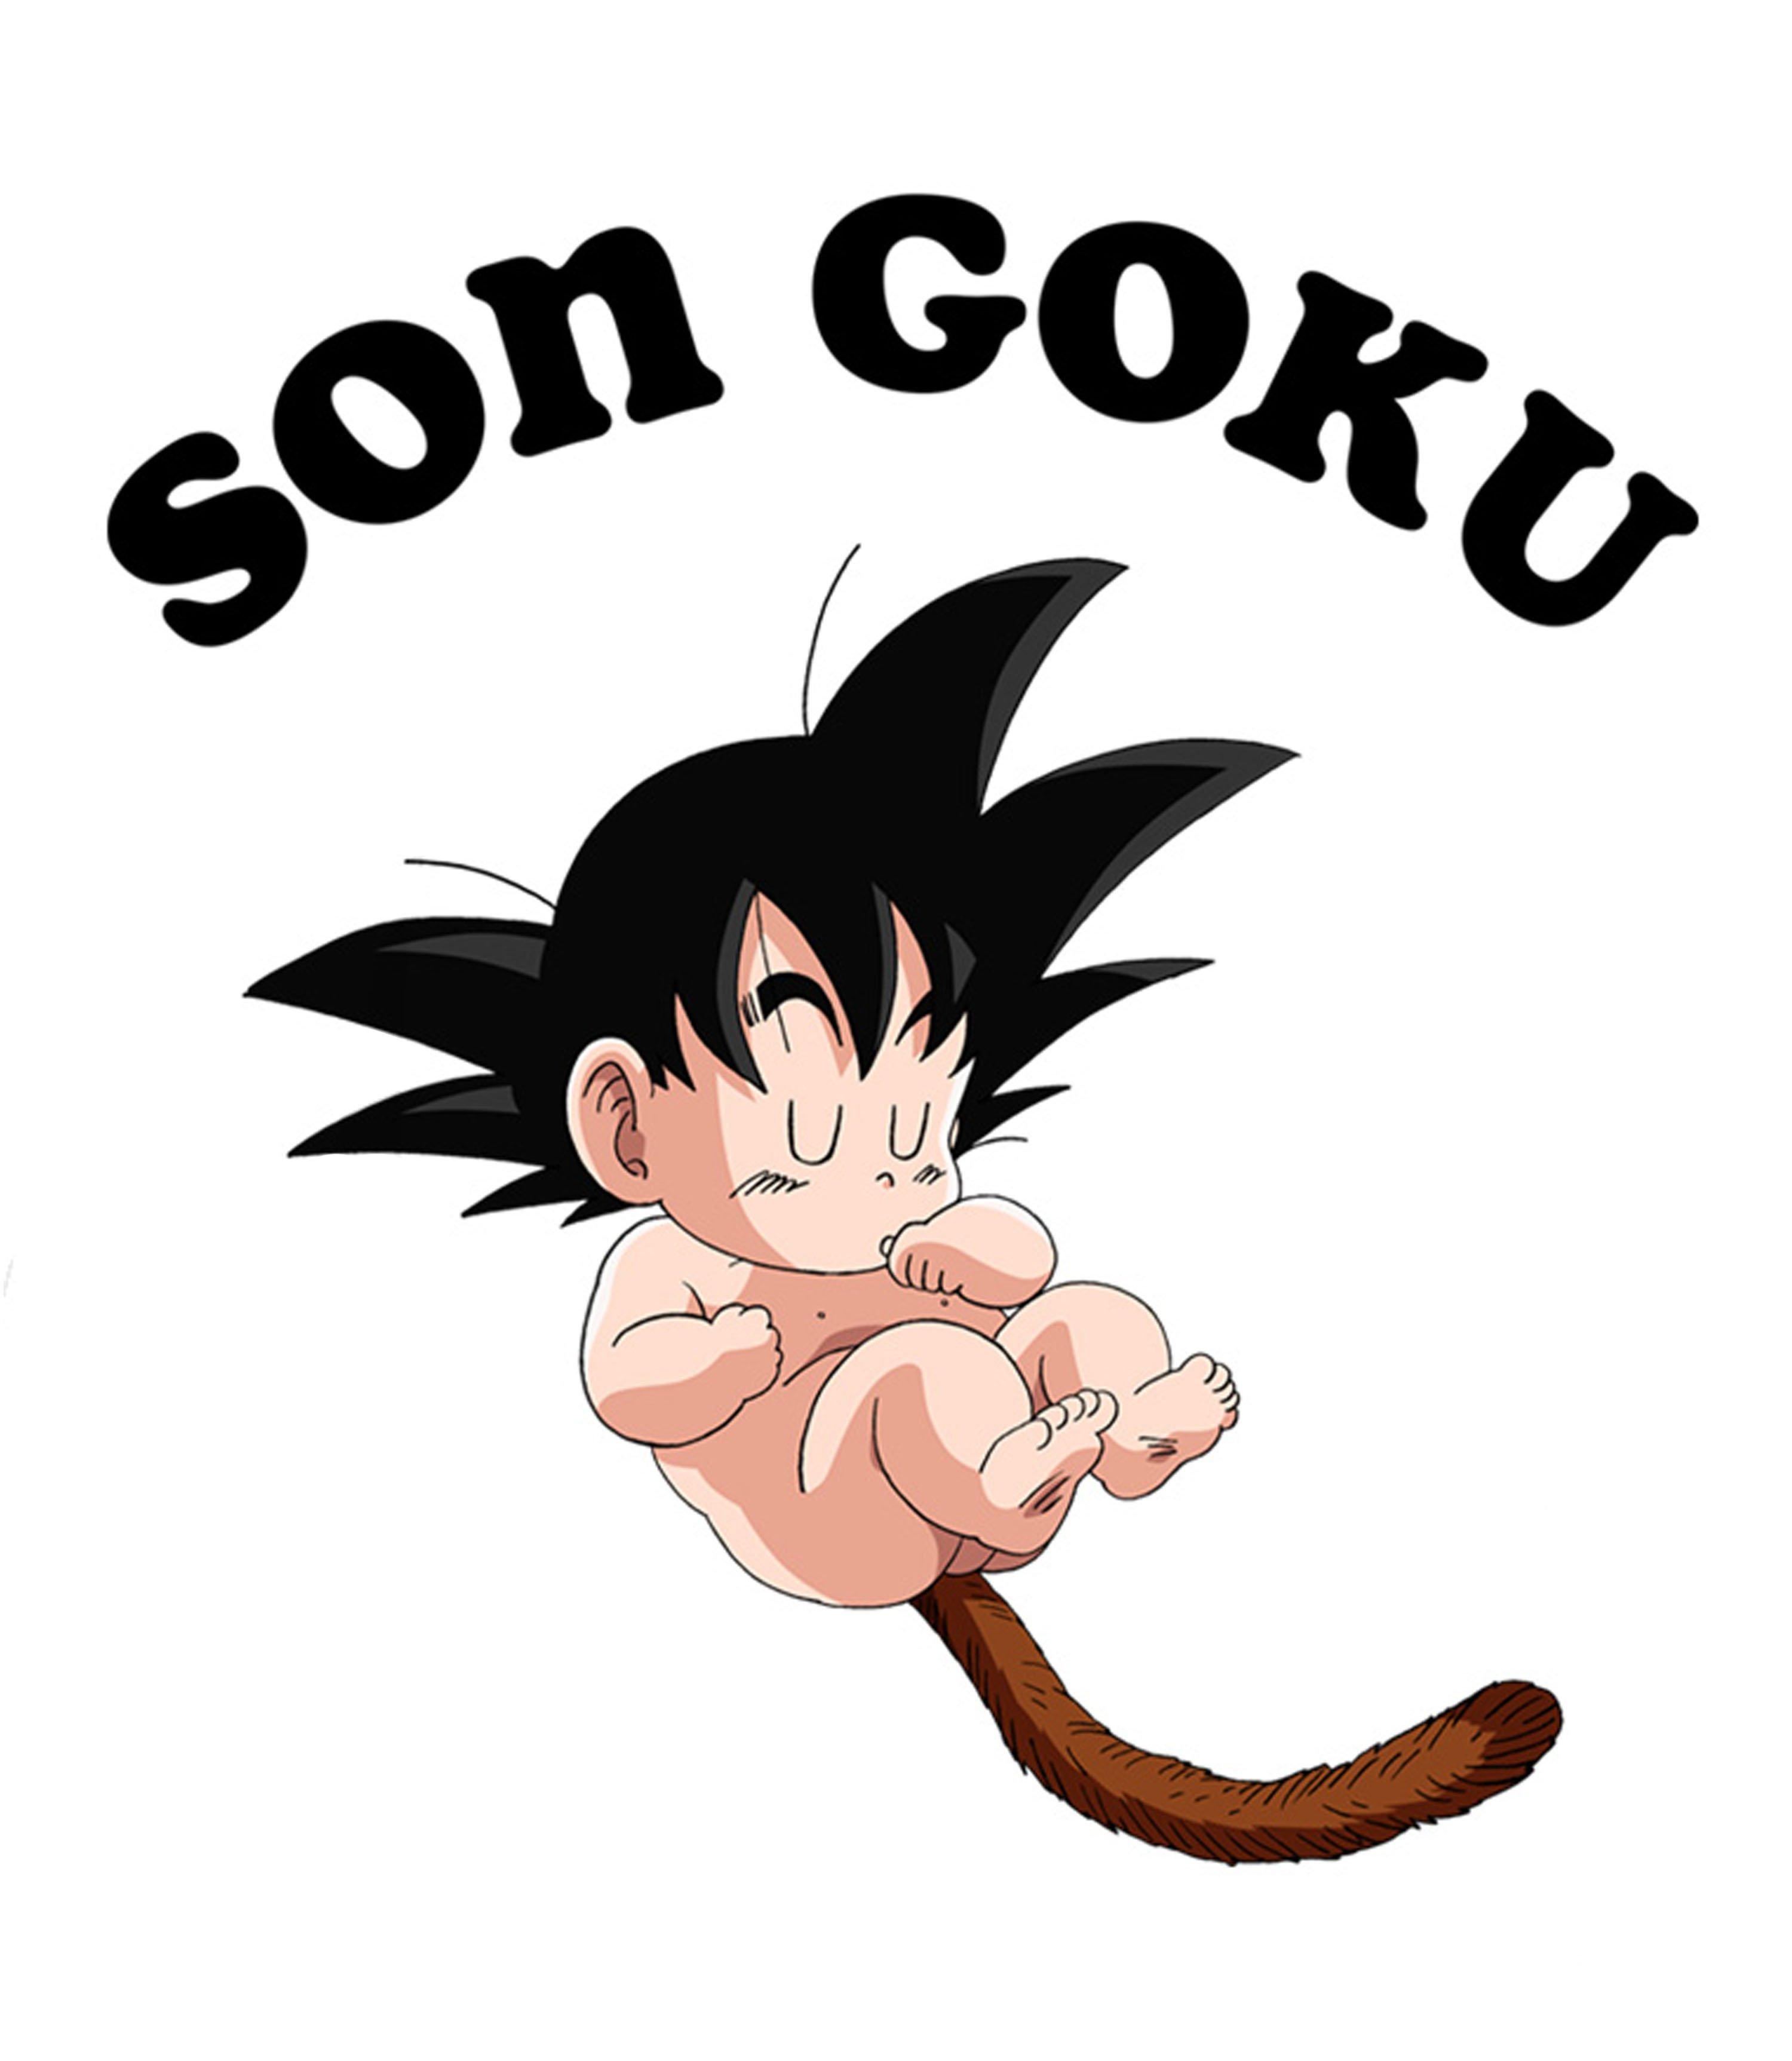 Goku from Dragon Ball